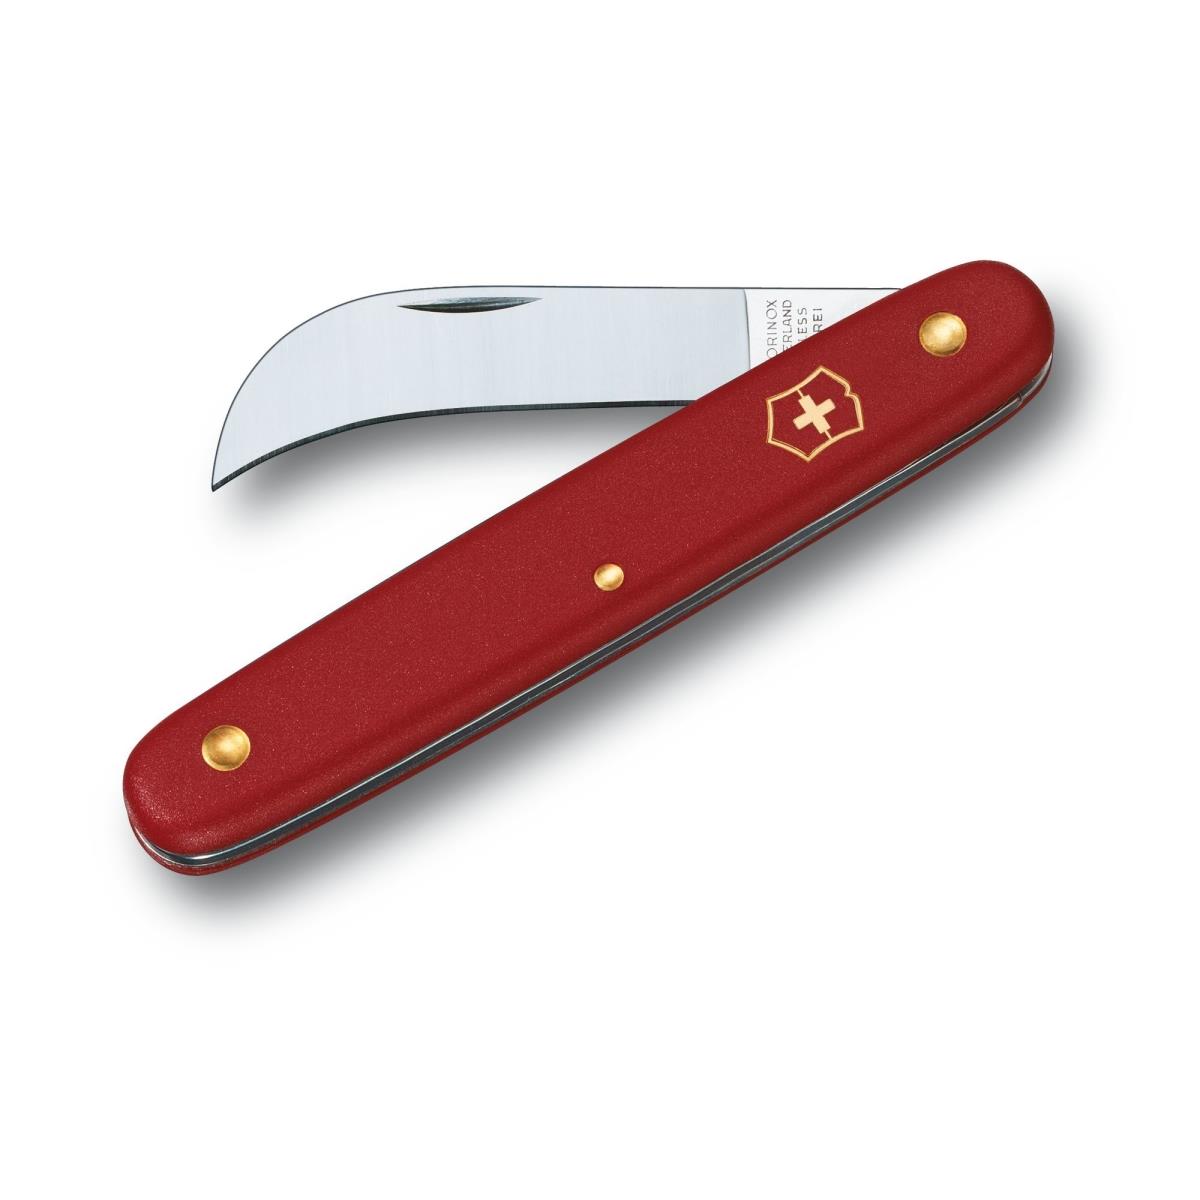 Нож 3.9060 - нож складной, садовый, красная рукоять. VICTORINOX складной садовый шезлонг gogarden